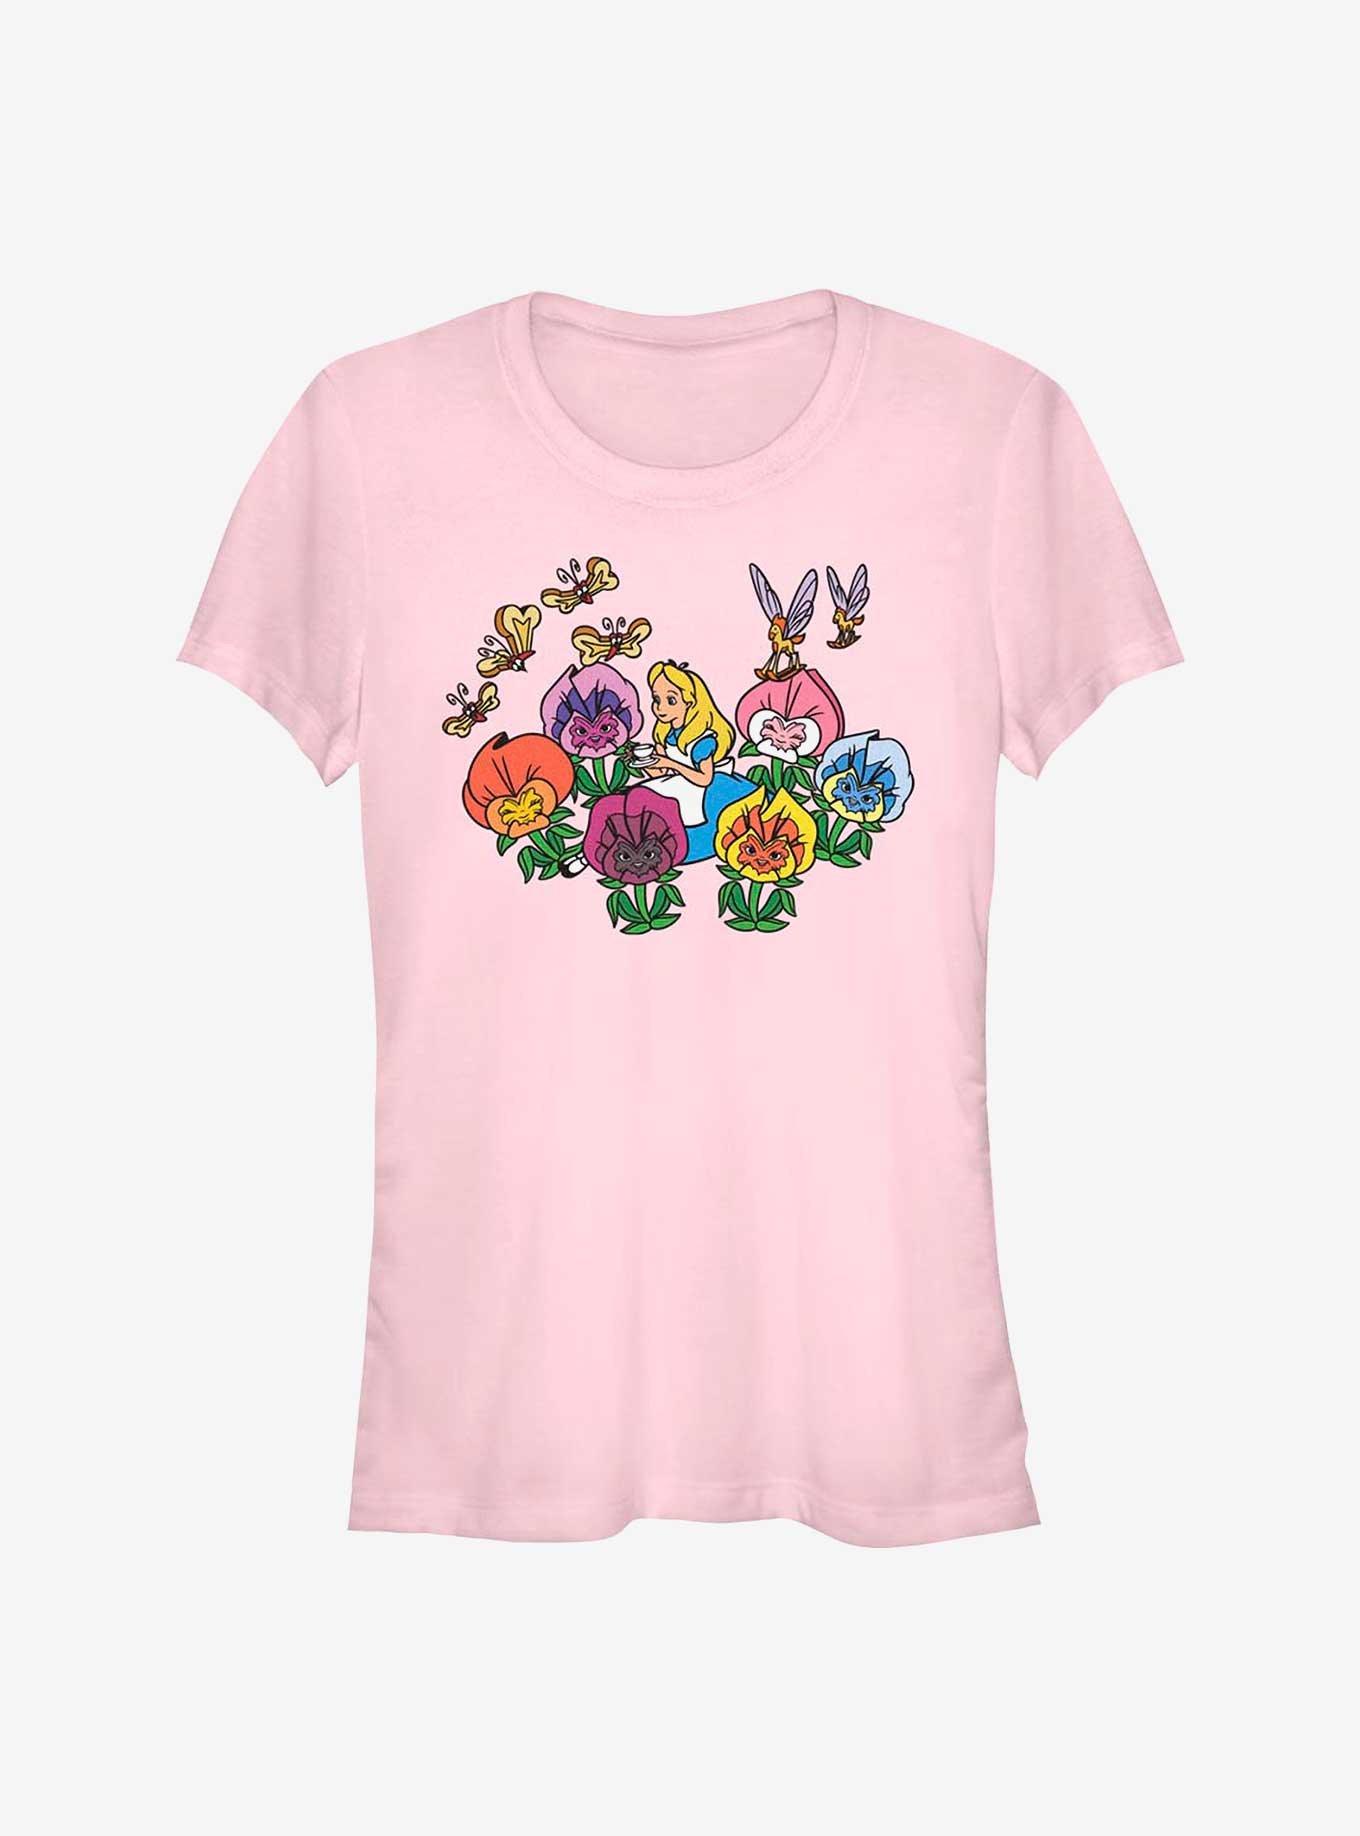 Disney Alice Wonderland Flowerland Girls T-Shirt